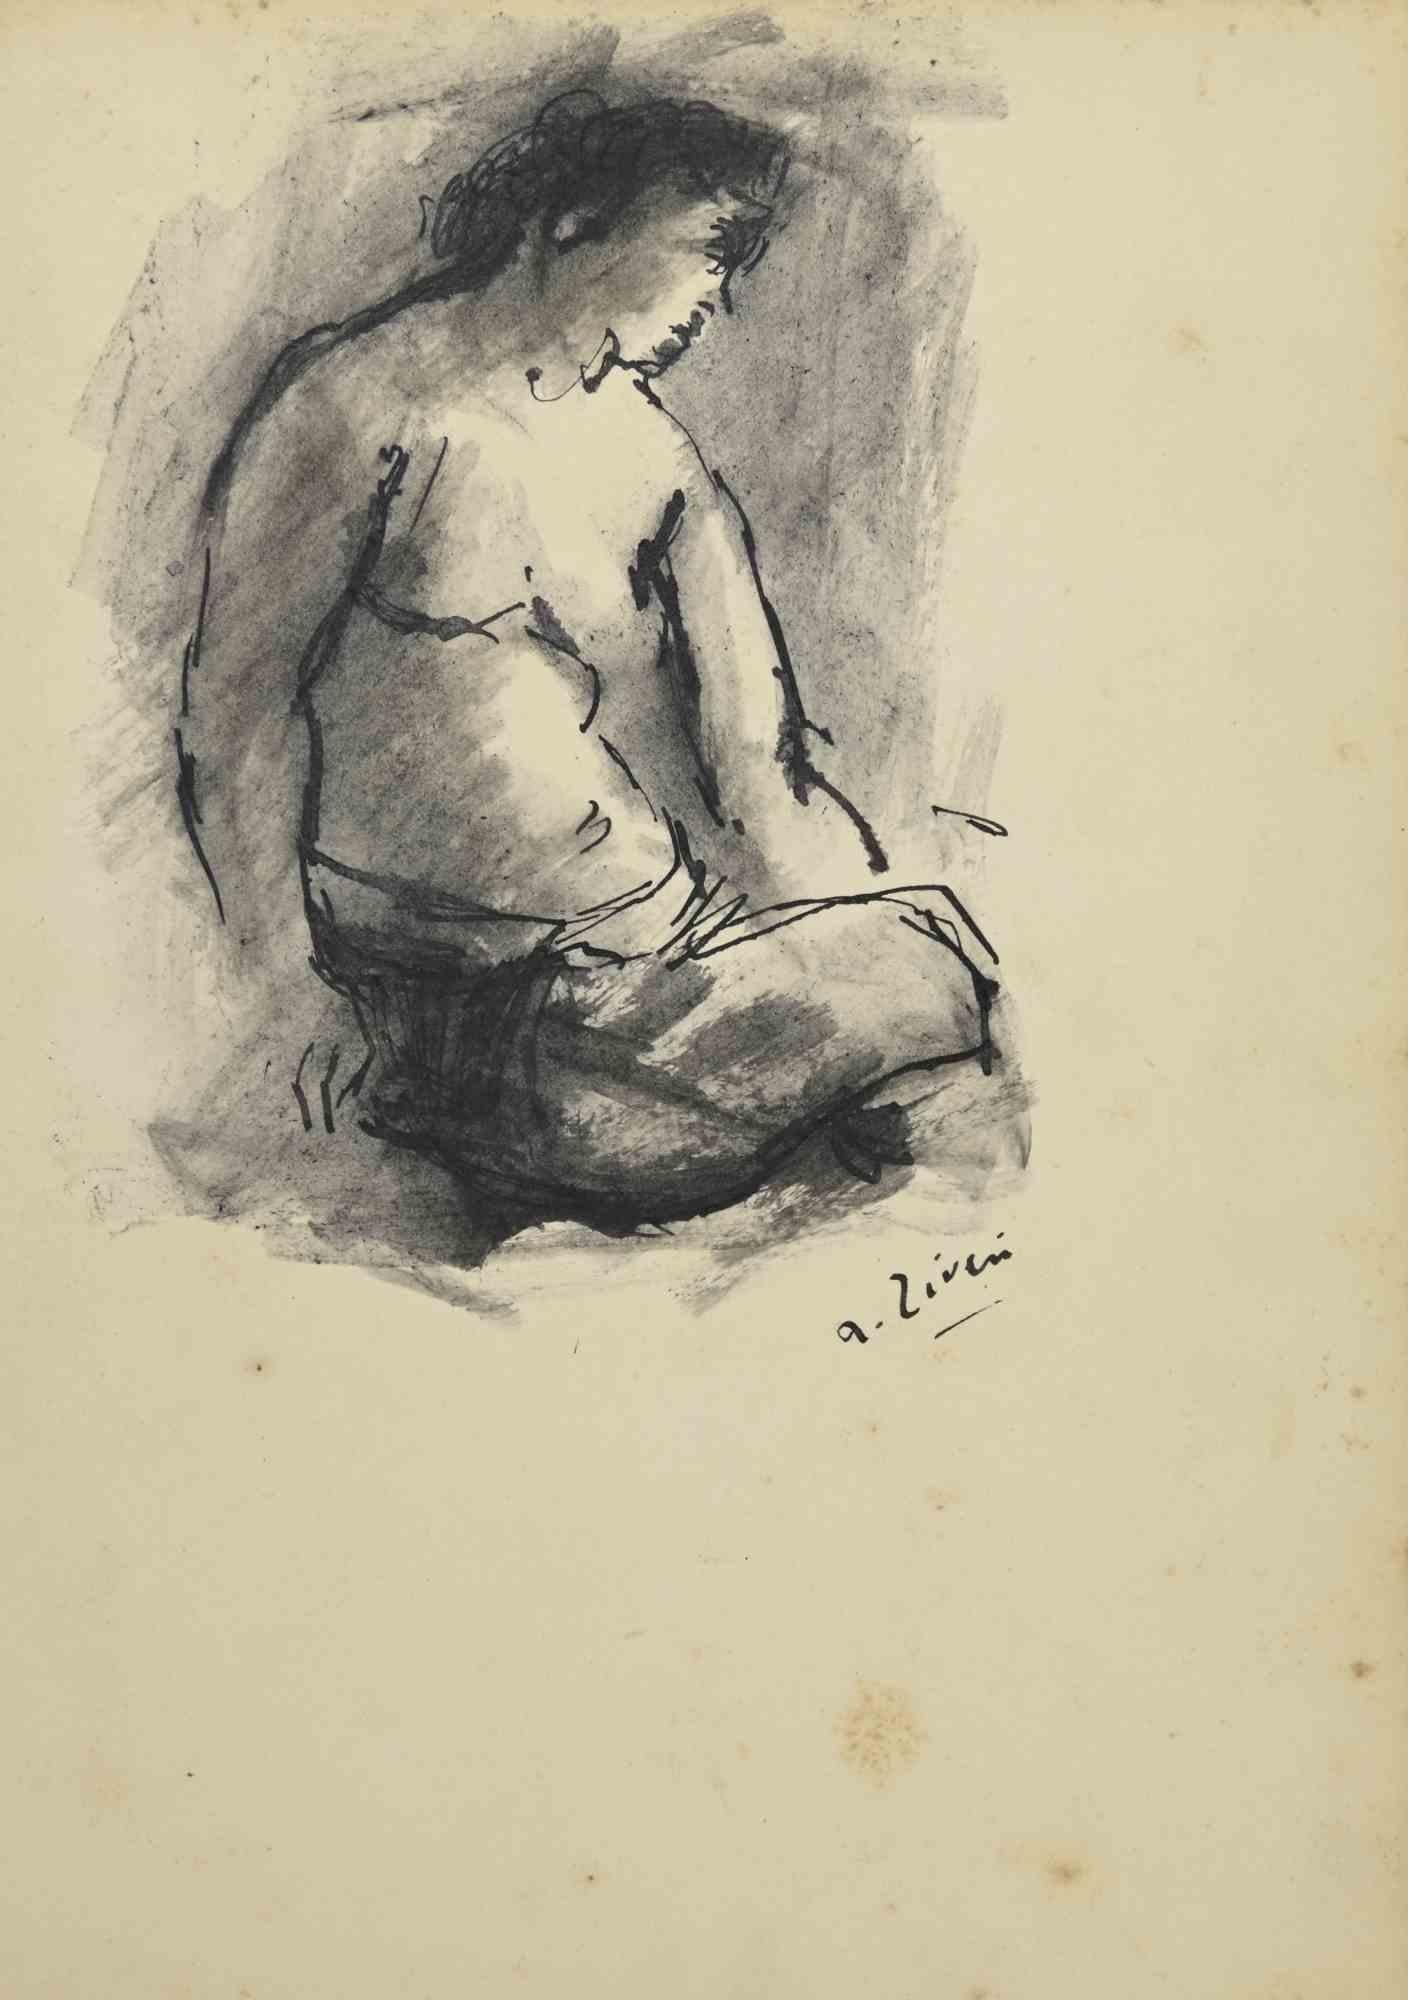 Nude ist eine Originalzeichnung von Alberto Ziveri aus den 1930er Jahren.

Aquarell und Tinte auf Papier.

Handsigniert und datiert.

In gutem Zustand mit leichten Stockflecken.

Das Kunstwerk wird durch geschickte Striche meisterhaft